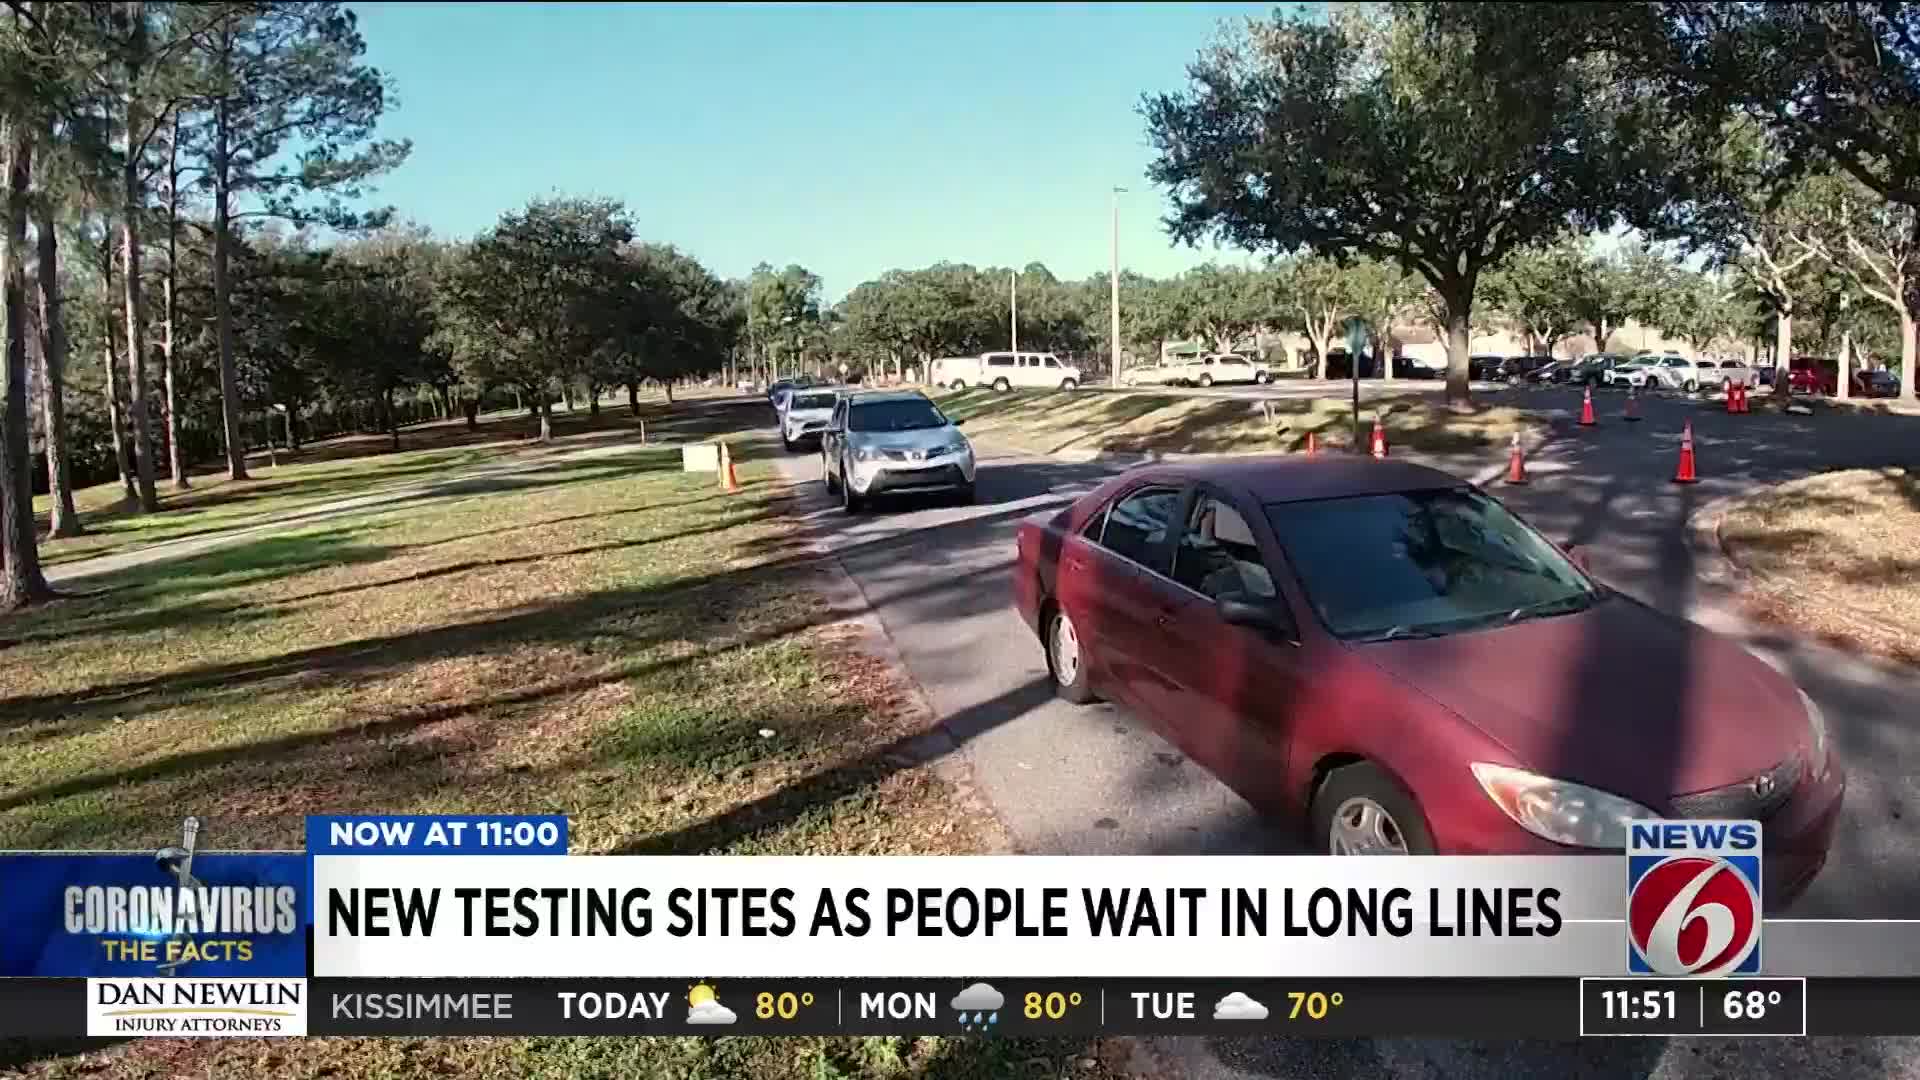 Drive-thru coronavirus testing site opening at Orlando Walmart